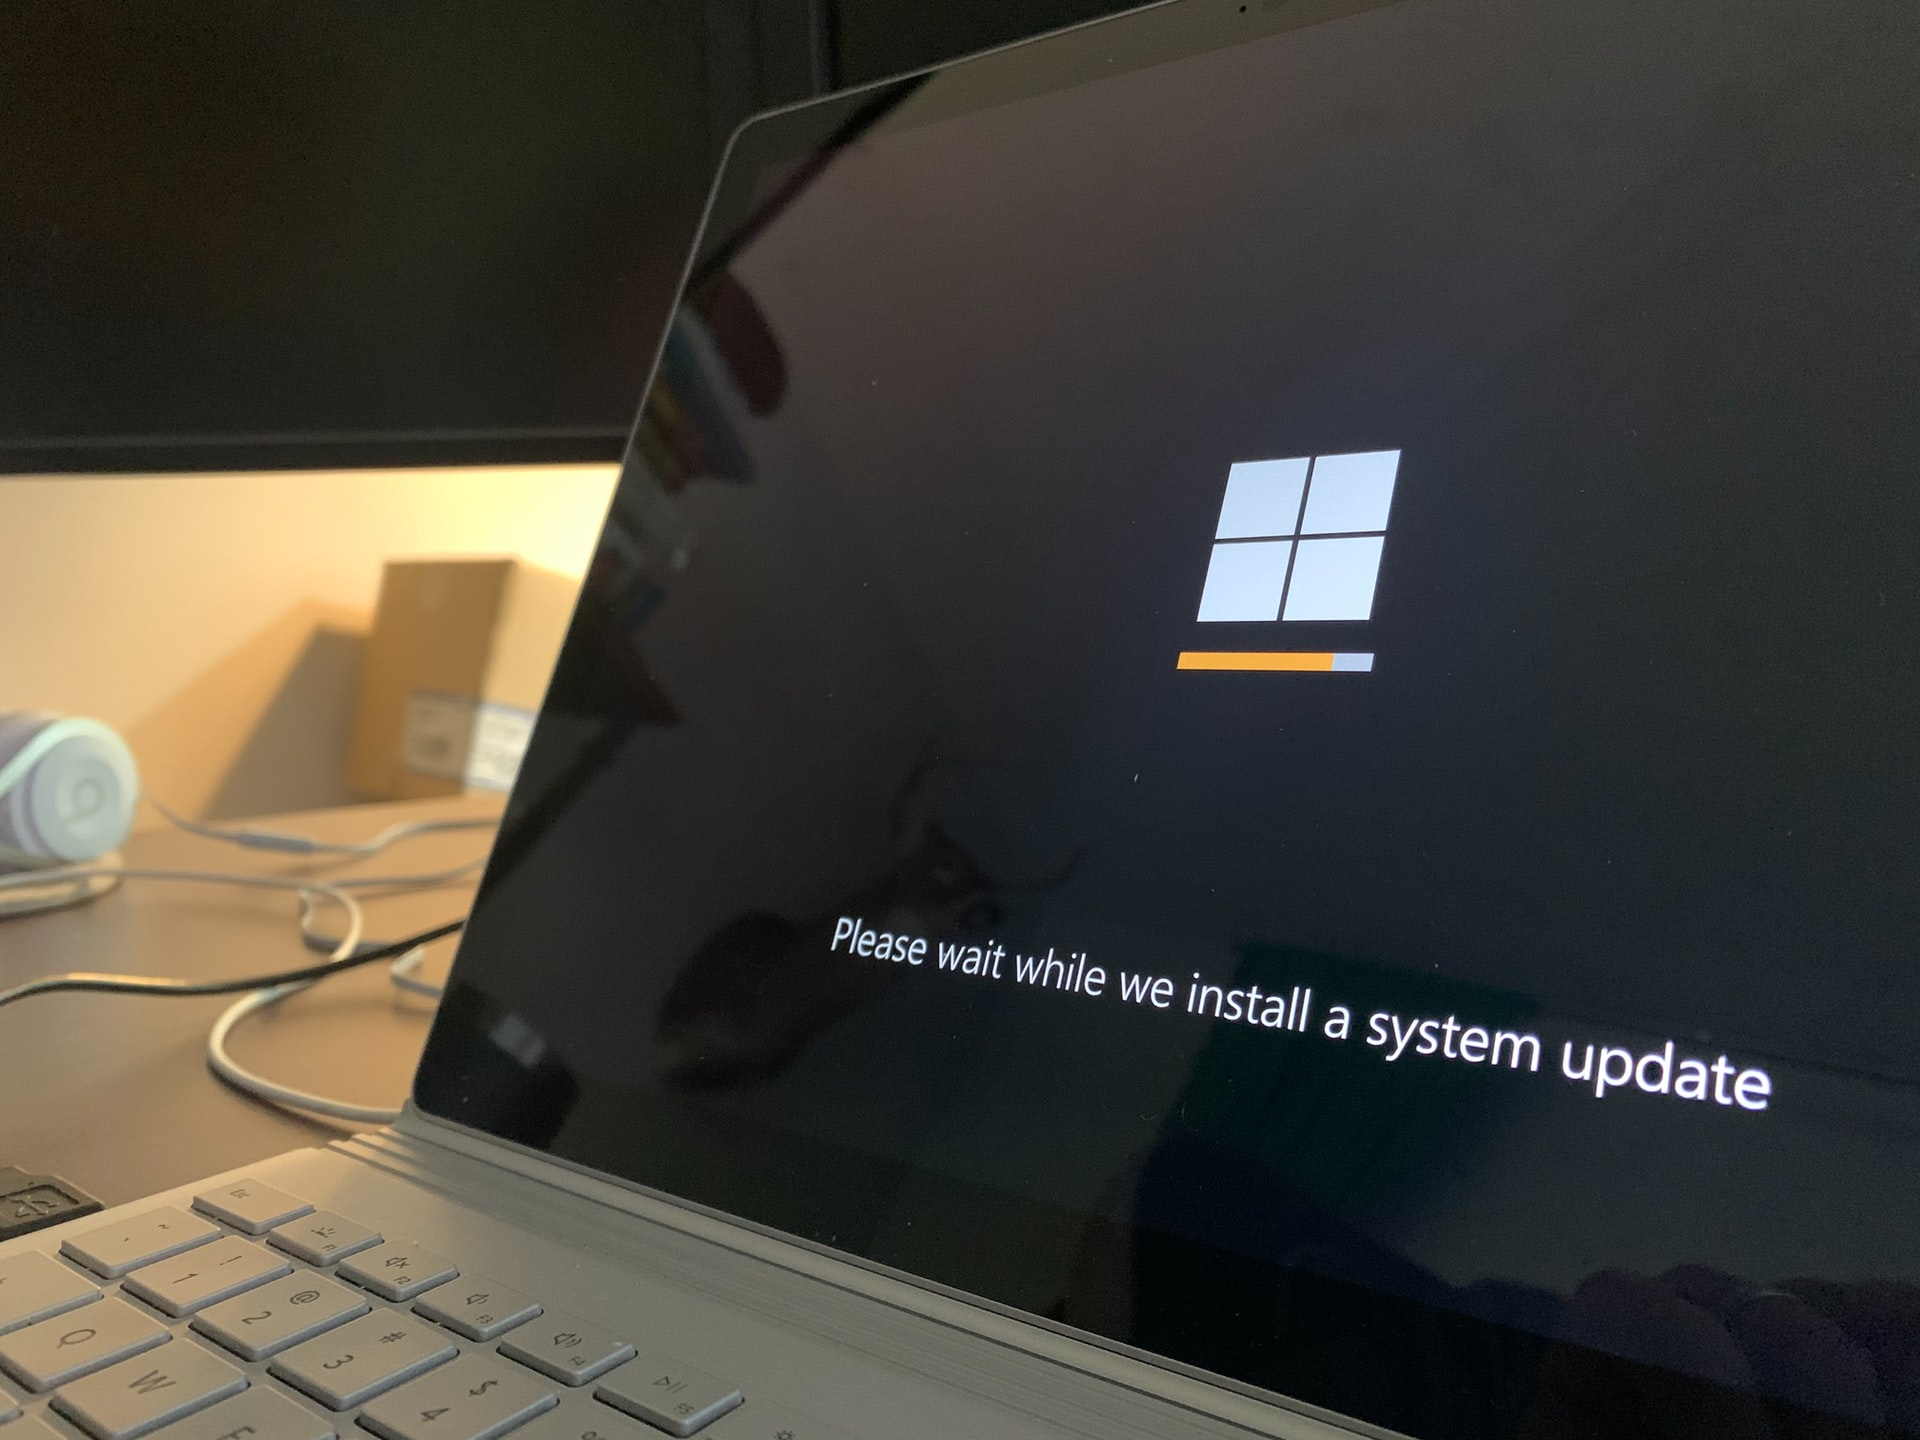 Nicht nur Windows 11: Microsoft hat das Windows 10 21H1 Update für alle Nutzer freigegeben